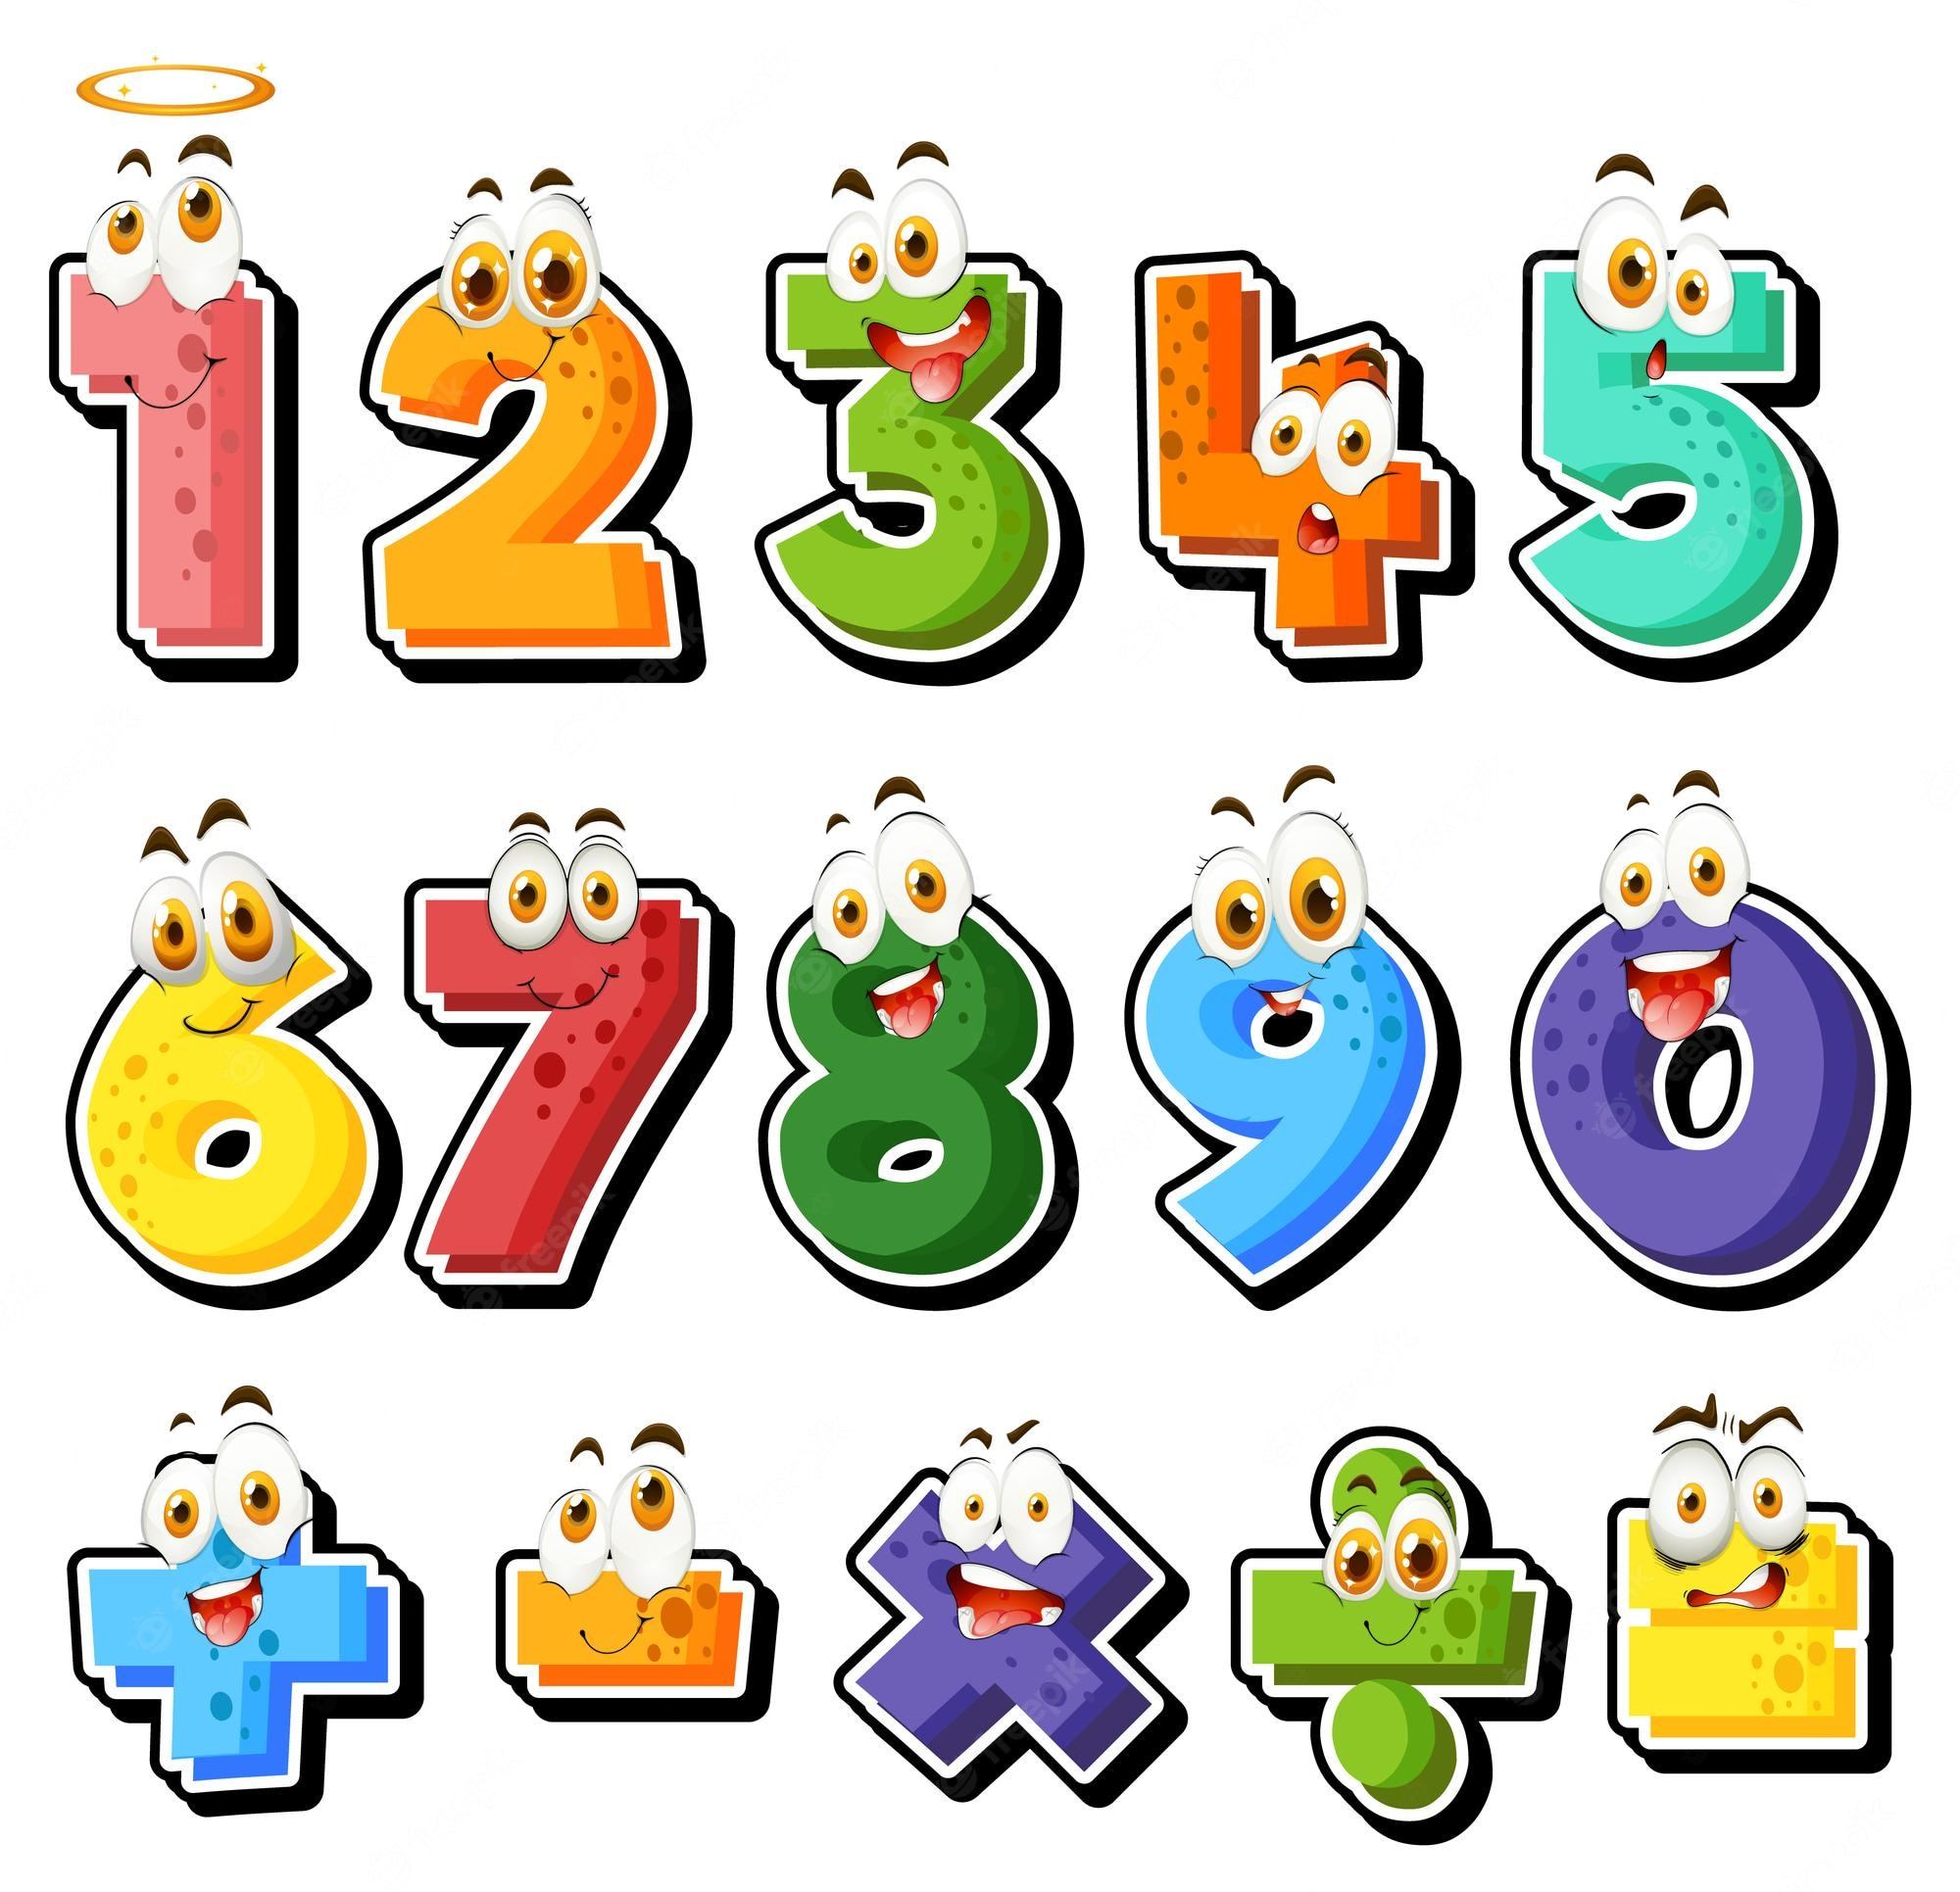 Números com vários dígitos - Série 11 - Questionário